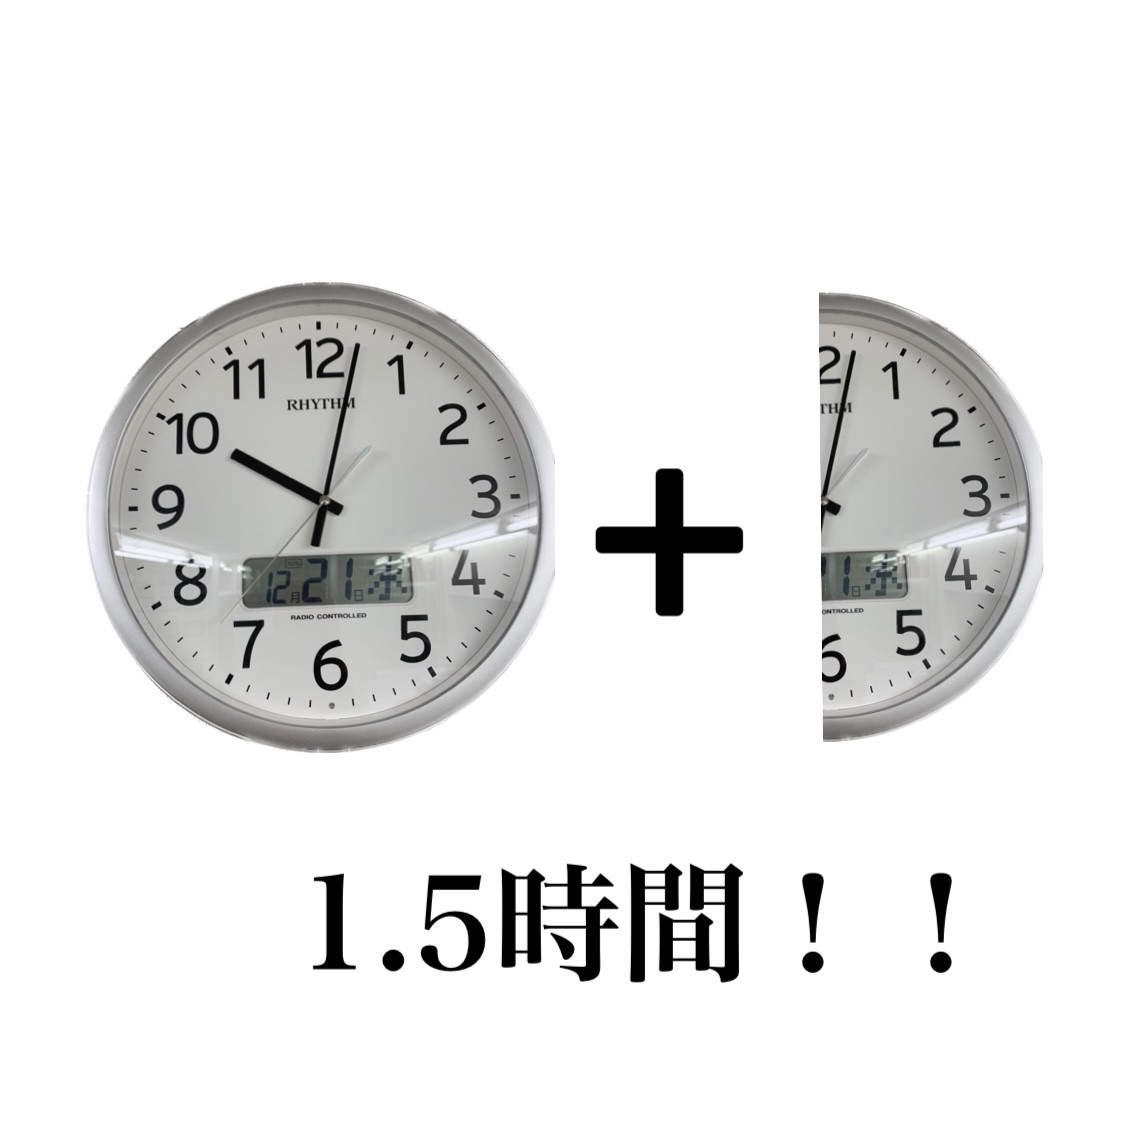 image2 - コピー (6)